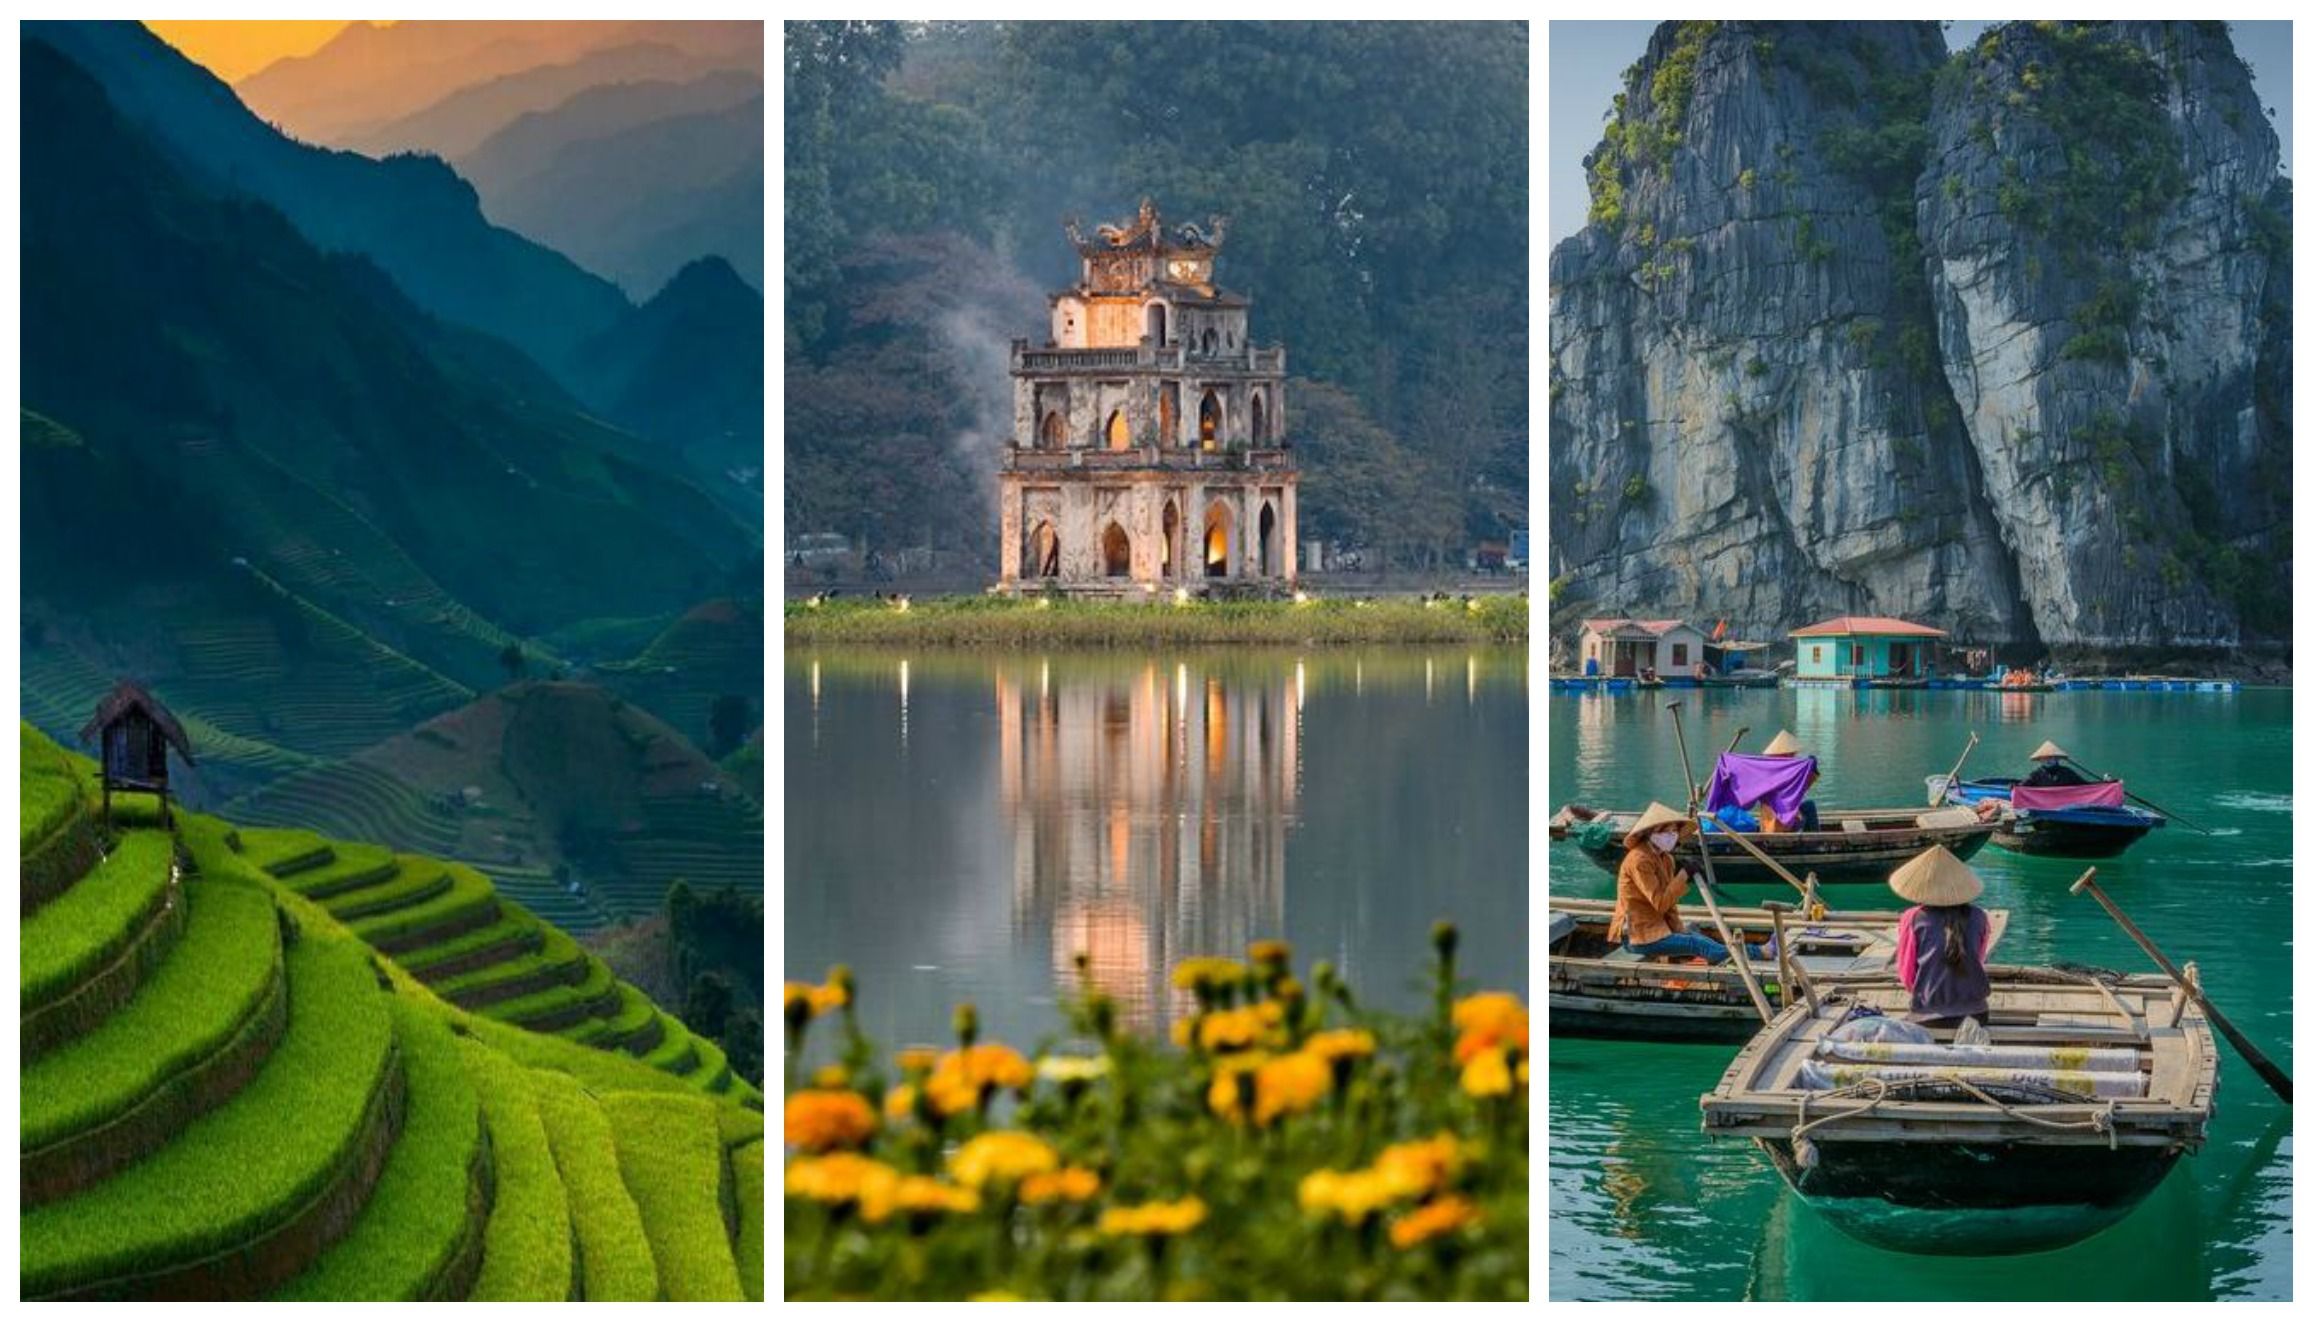 Explore the Enchanting Land of Sapa from Hanoi